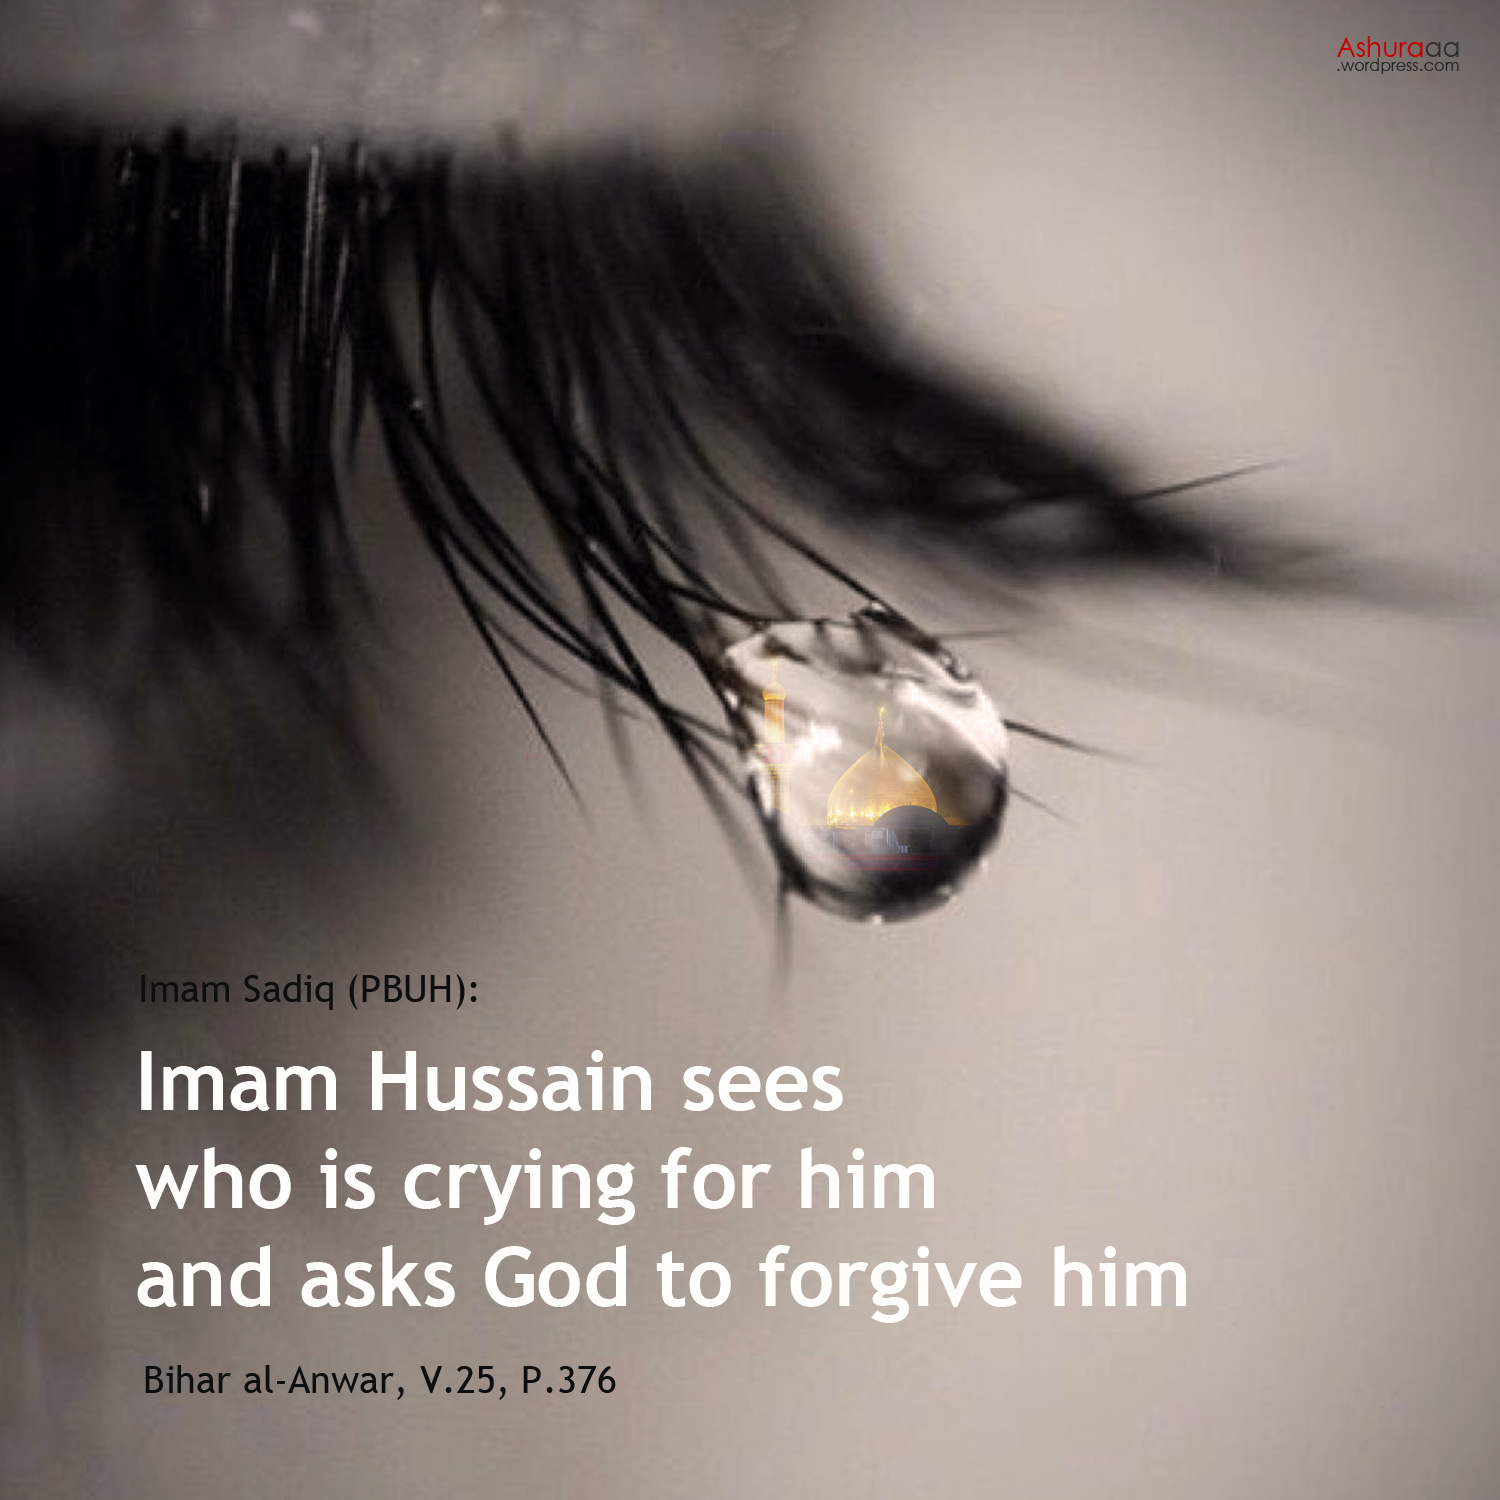 حدیث انگلیسی درباره گریه بر امام حسین | Crying for Imam Hussain